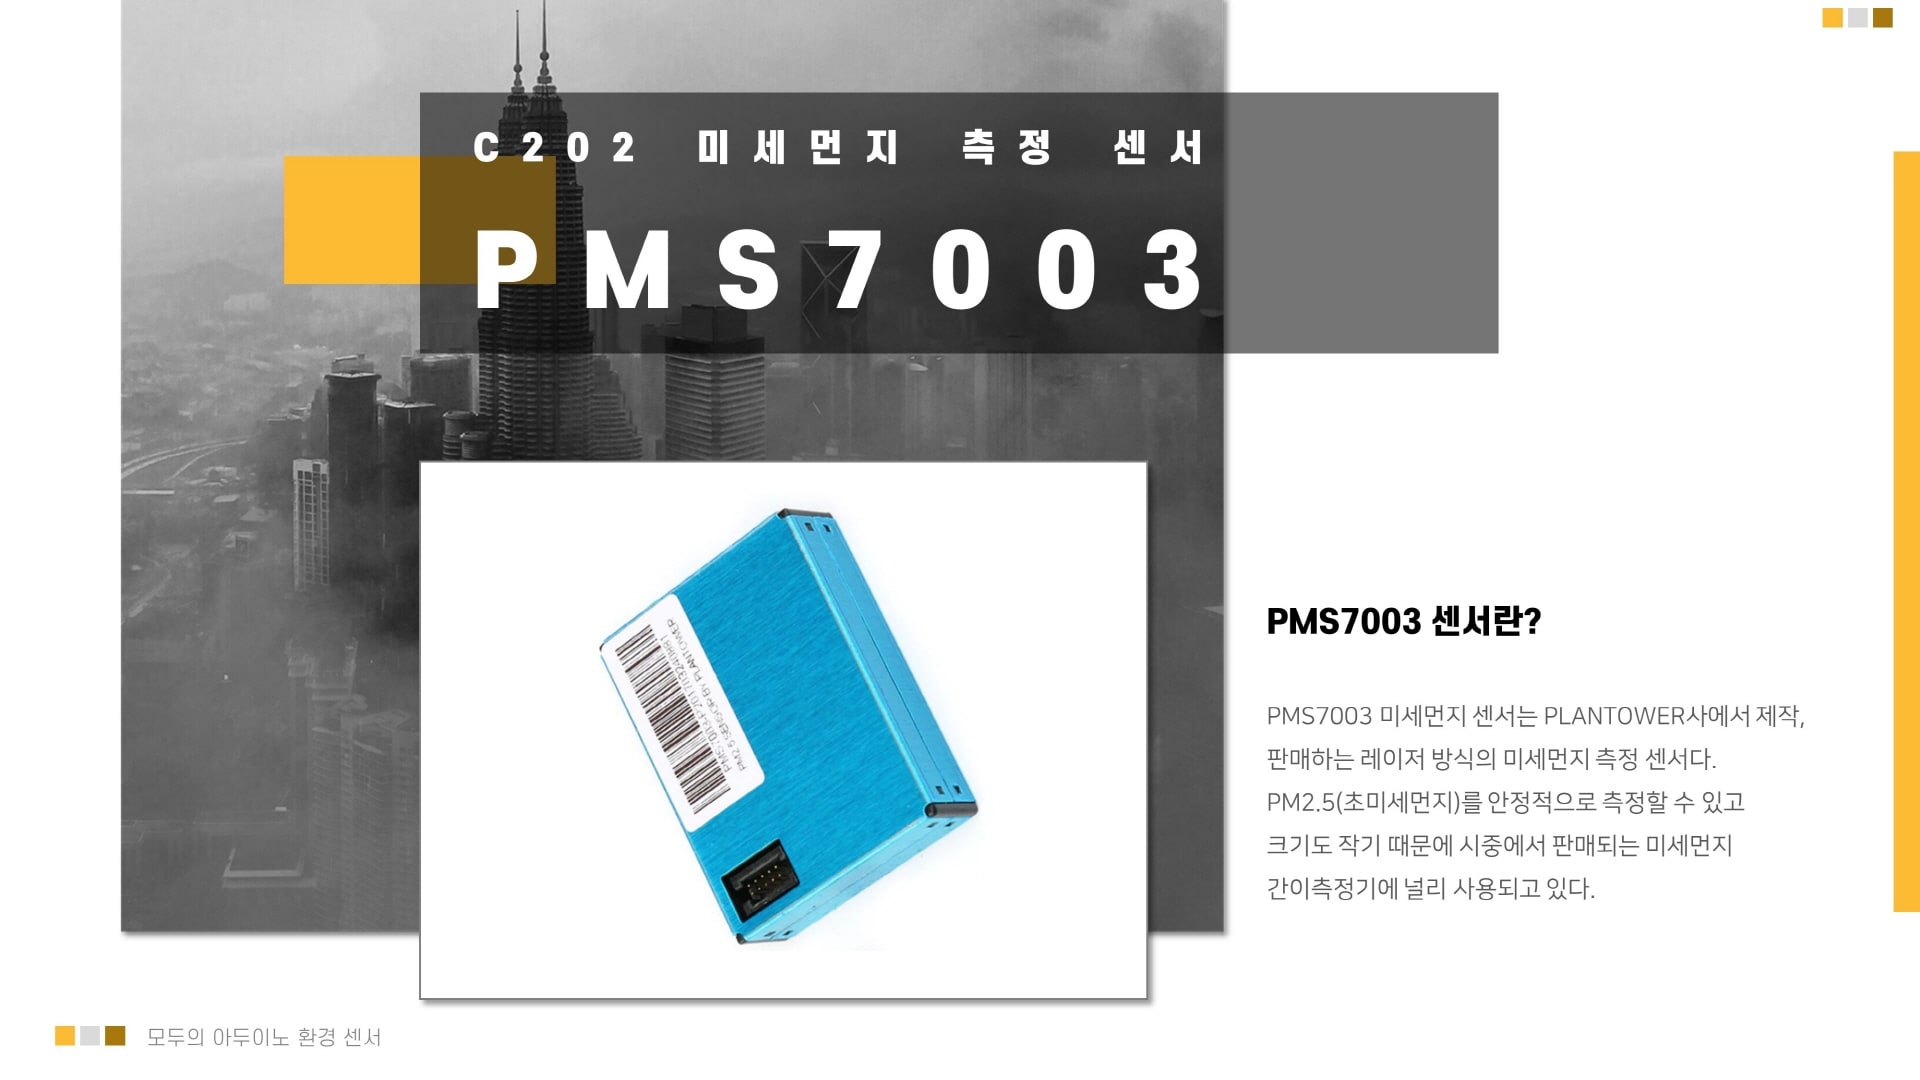 PMS7003 미세먼지 아두이노 센서 이미지 입니다.